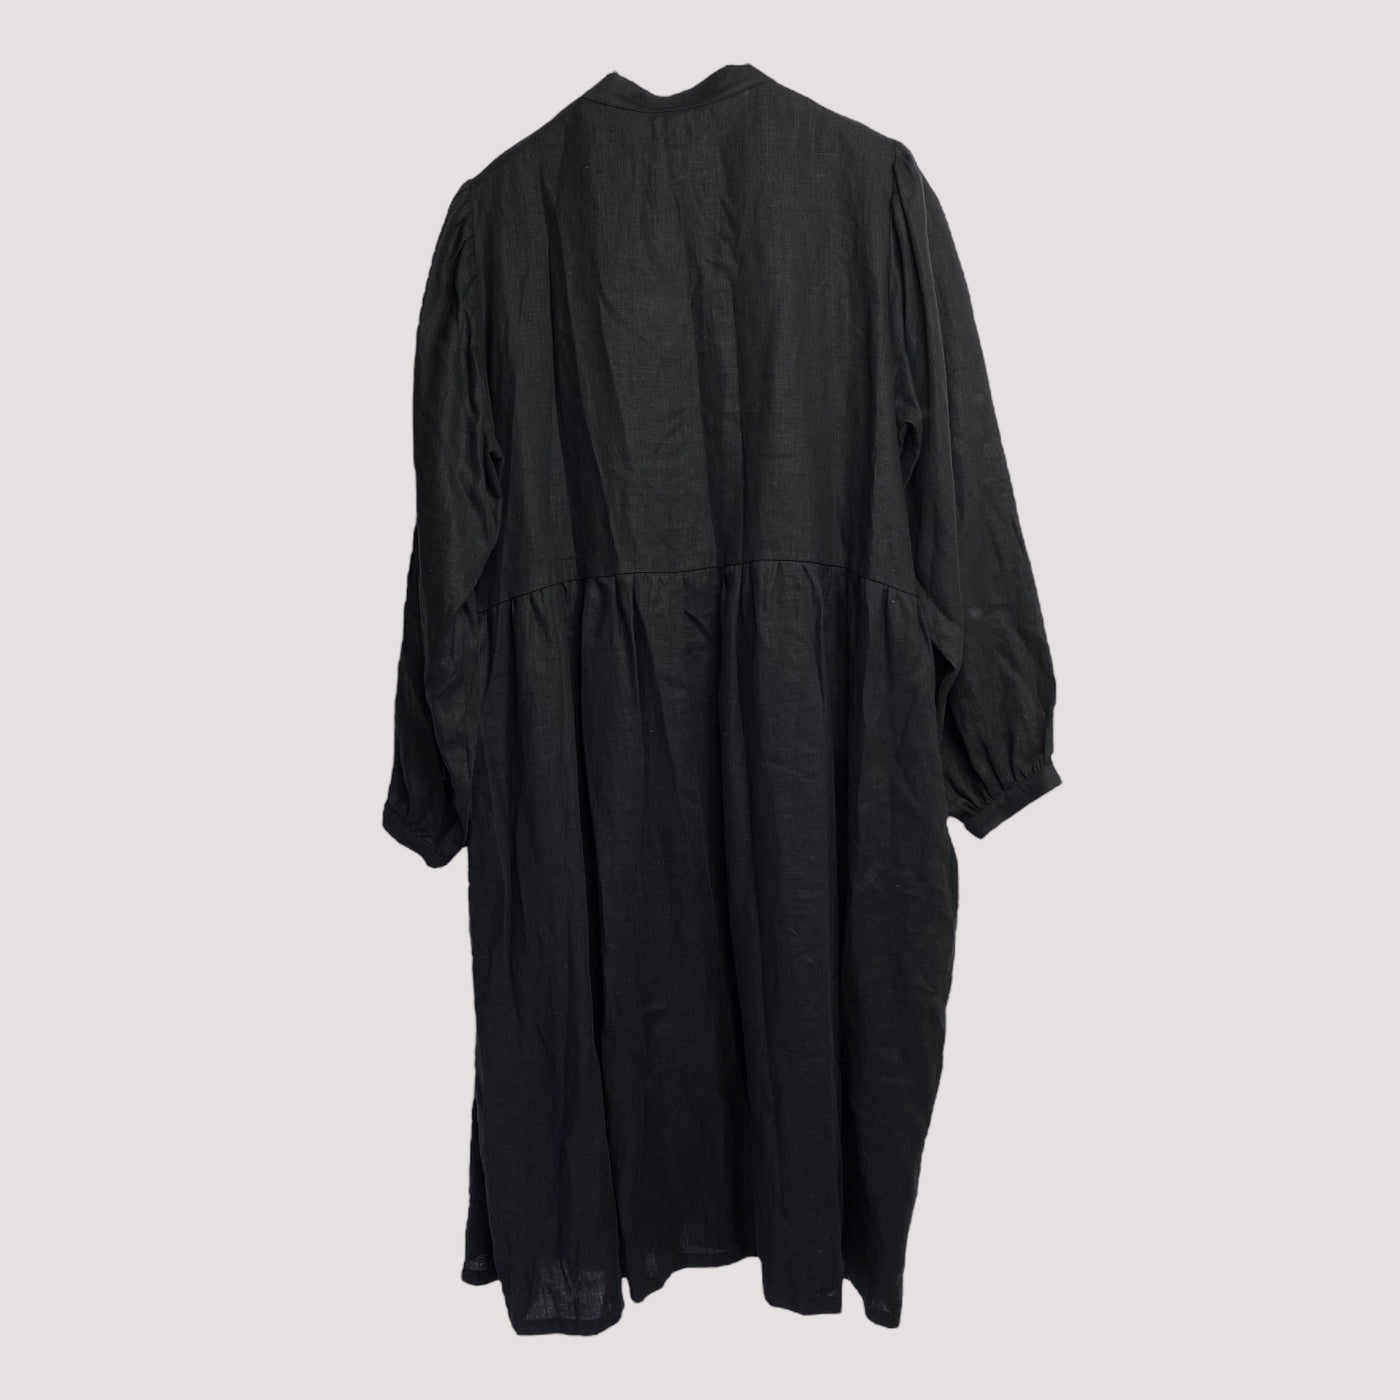 Bypias linen dress, black | woman L/XL